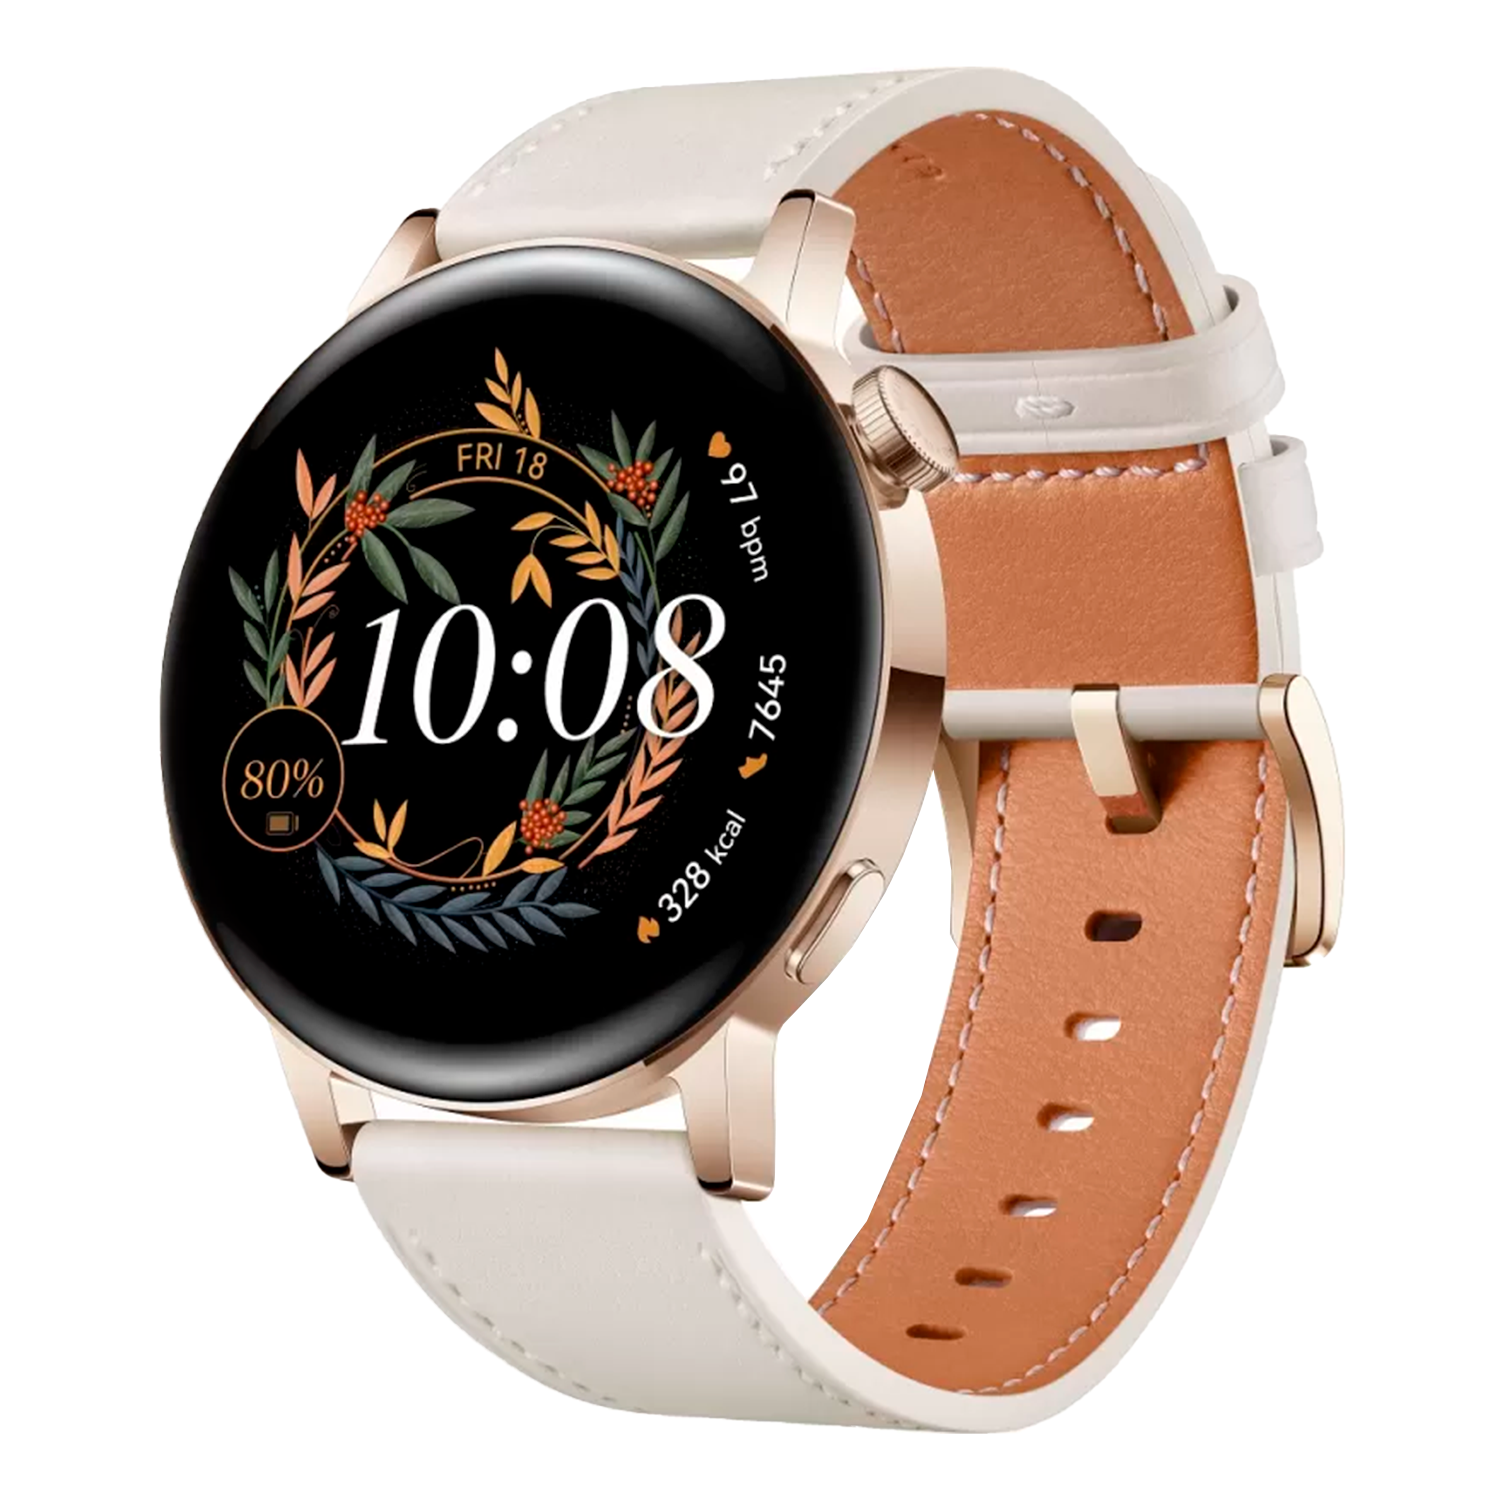 Relógio Smartwatch Huawei GT3 MIL-B19 1.32" / 42MM / Bluetooth / 5 ATM - Branco e Dourado